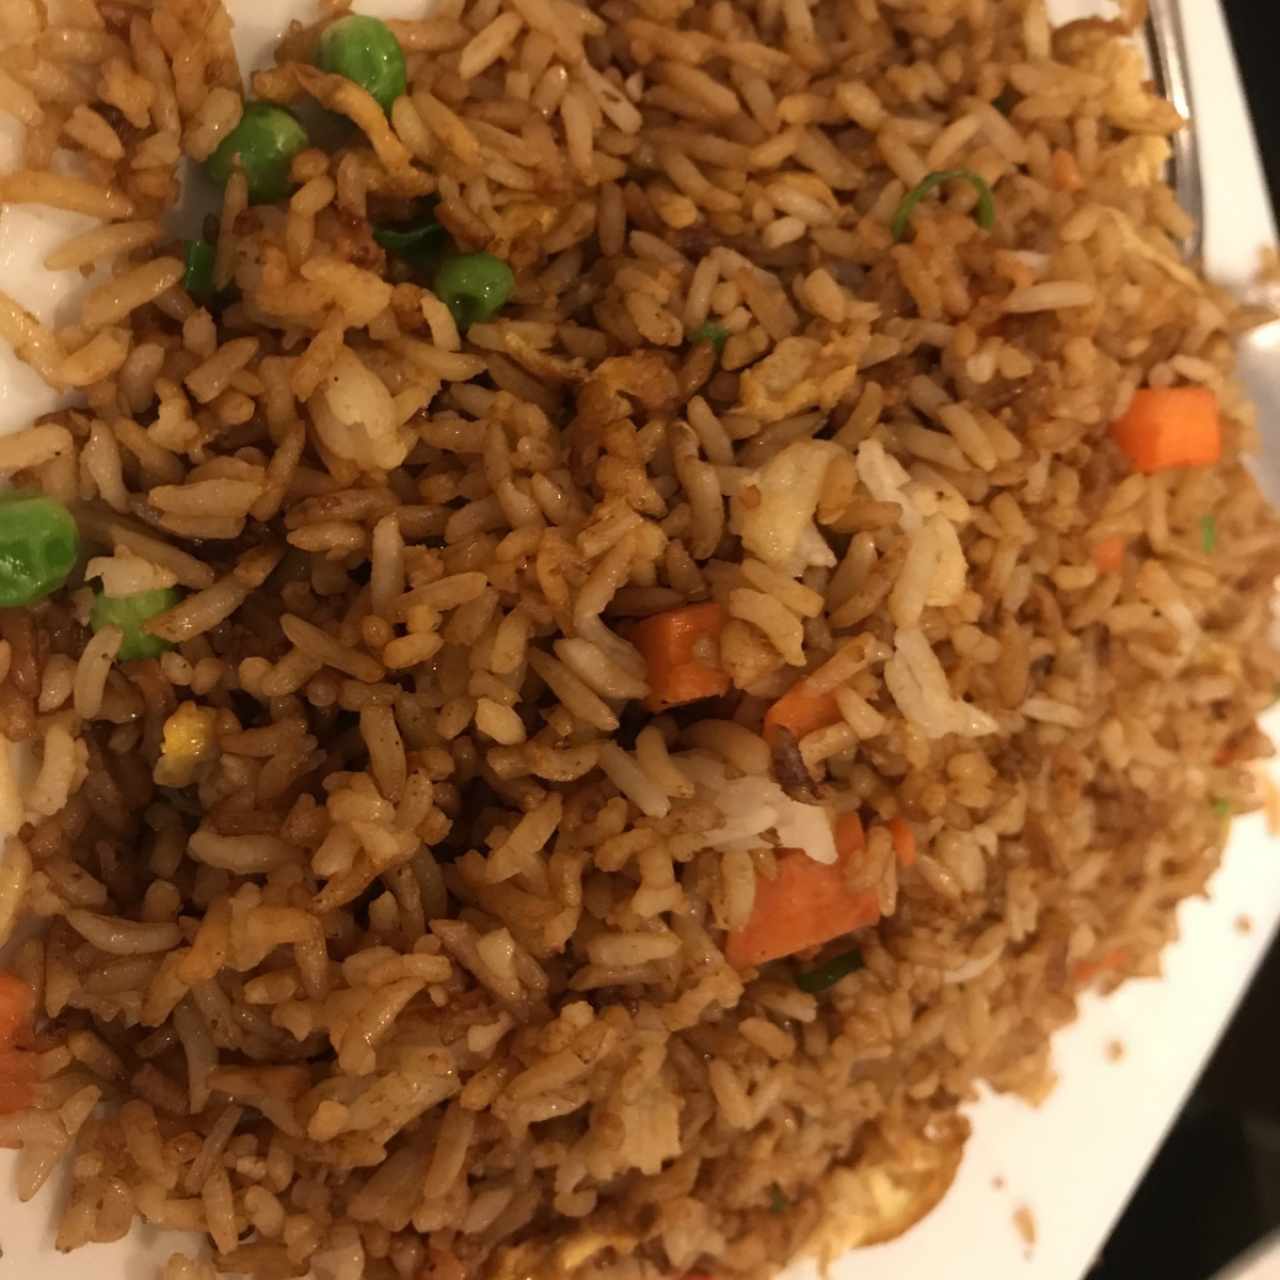 arroz frito de vegetales